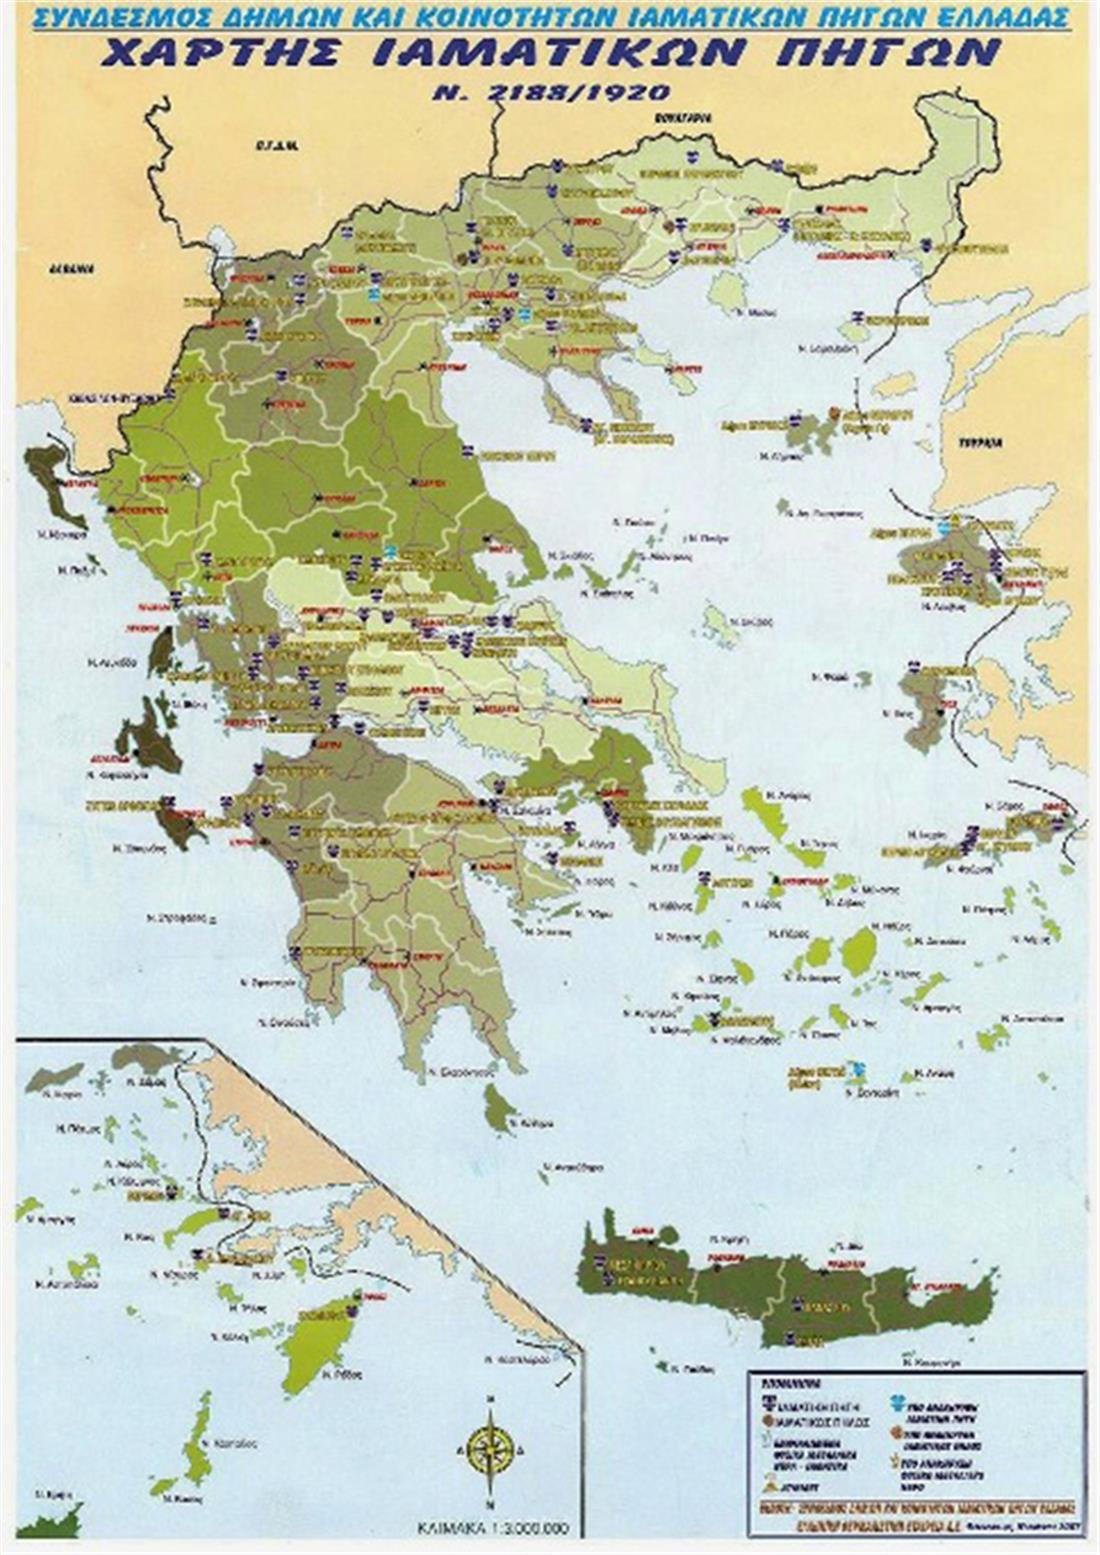 Ιαματικές Πηγές - Ελλάδα - αναγνώριση - νομιμοποίηση - Φυσικοί Πόροι